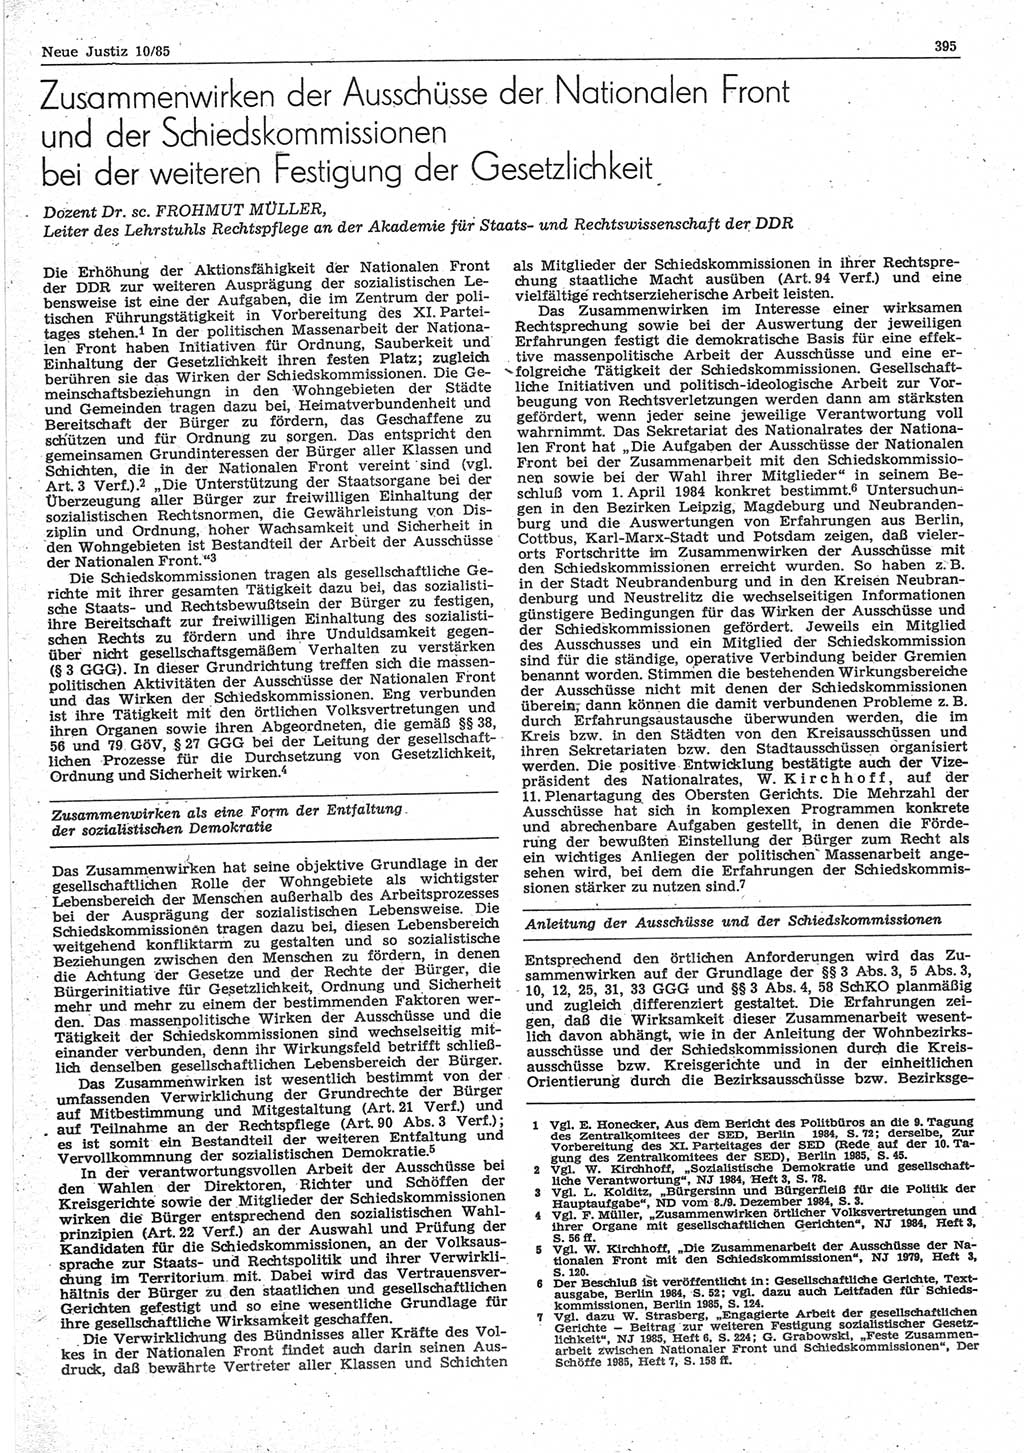 Neue Justiz (NJ), Zeitschrift für sozialistisches Recht und Gesetzlichkeit [Deutsche Demokratische Republik (DDR)], 39. Jahrgang 1985, Seite 395 (NJ DDR 1985, S. 395)